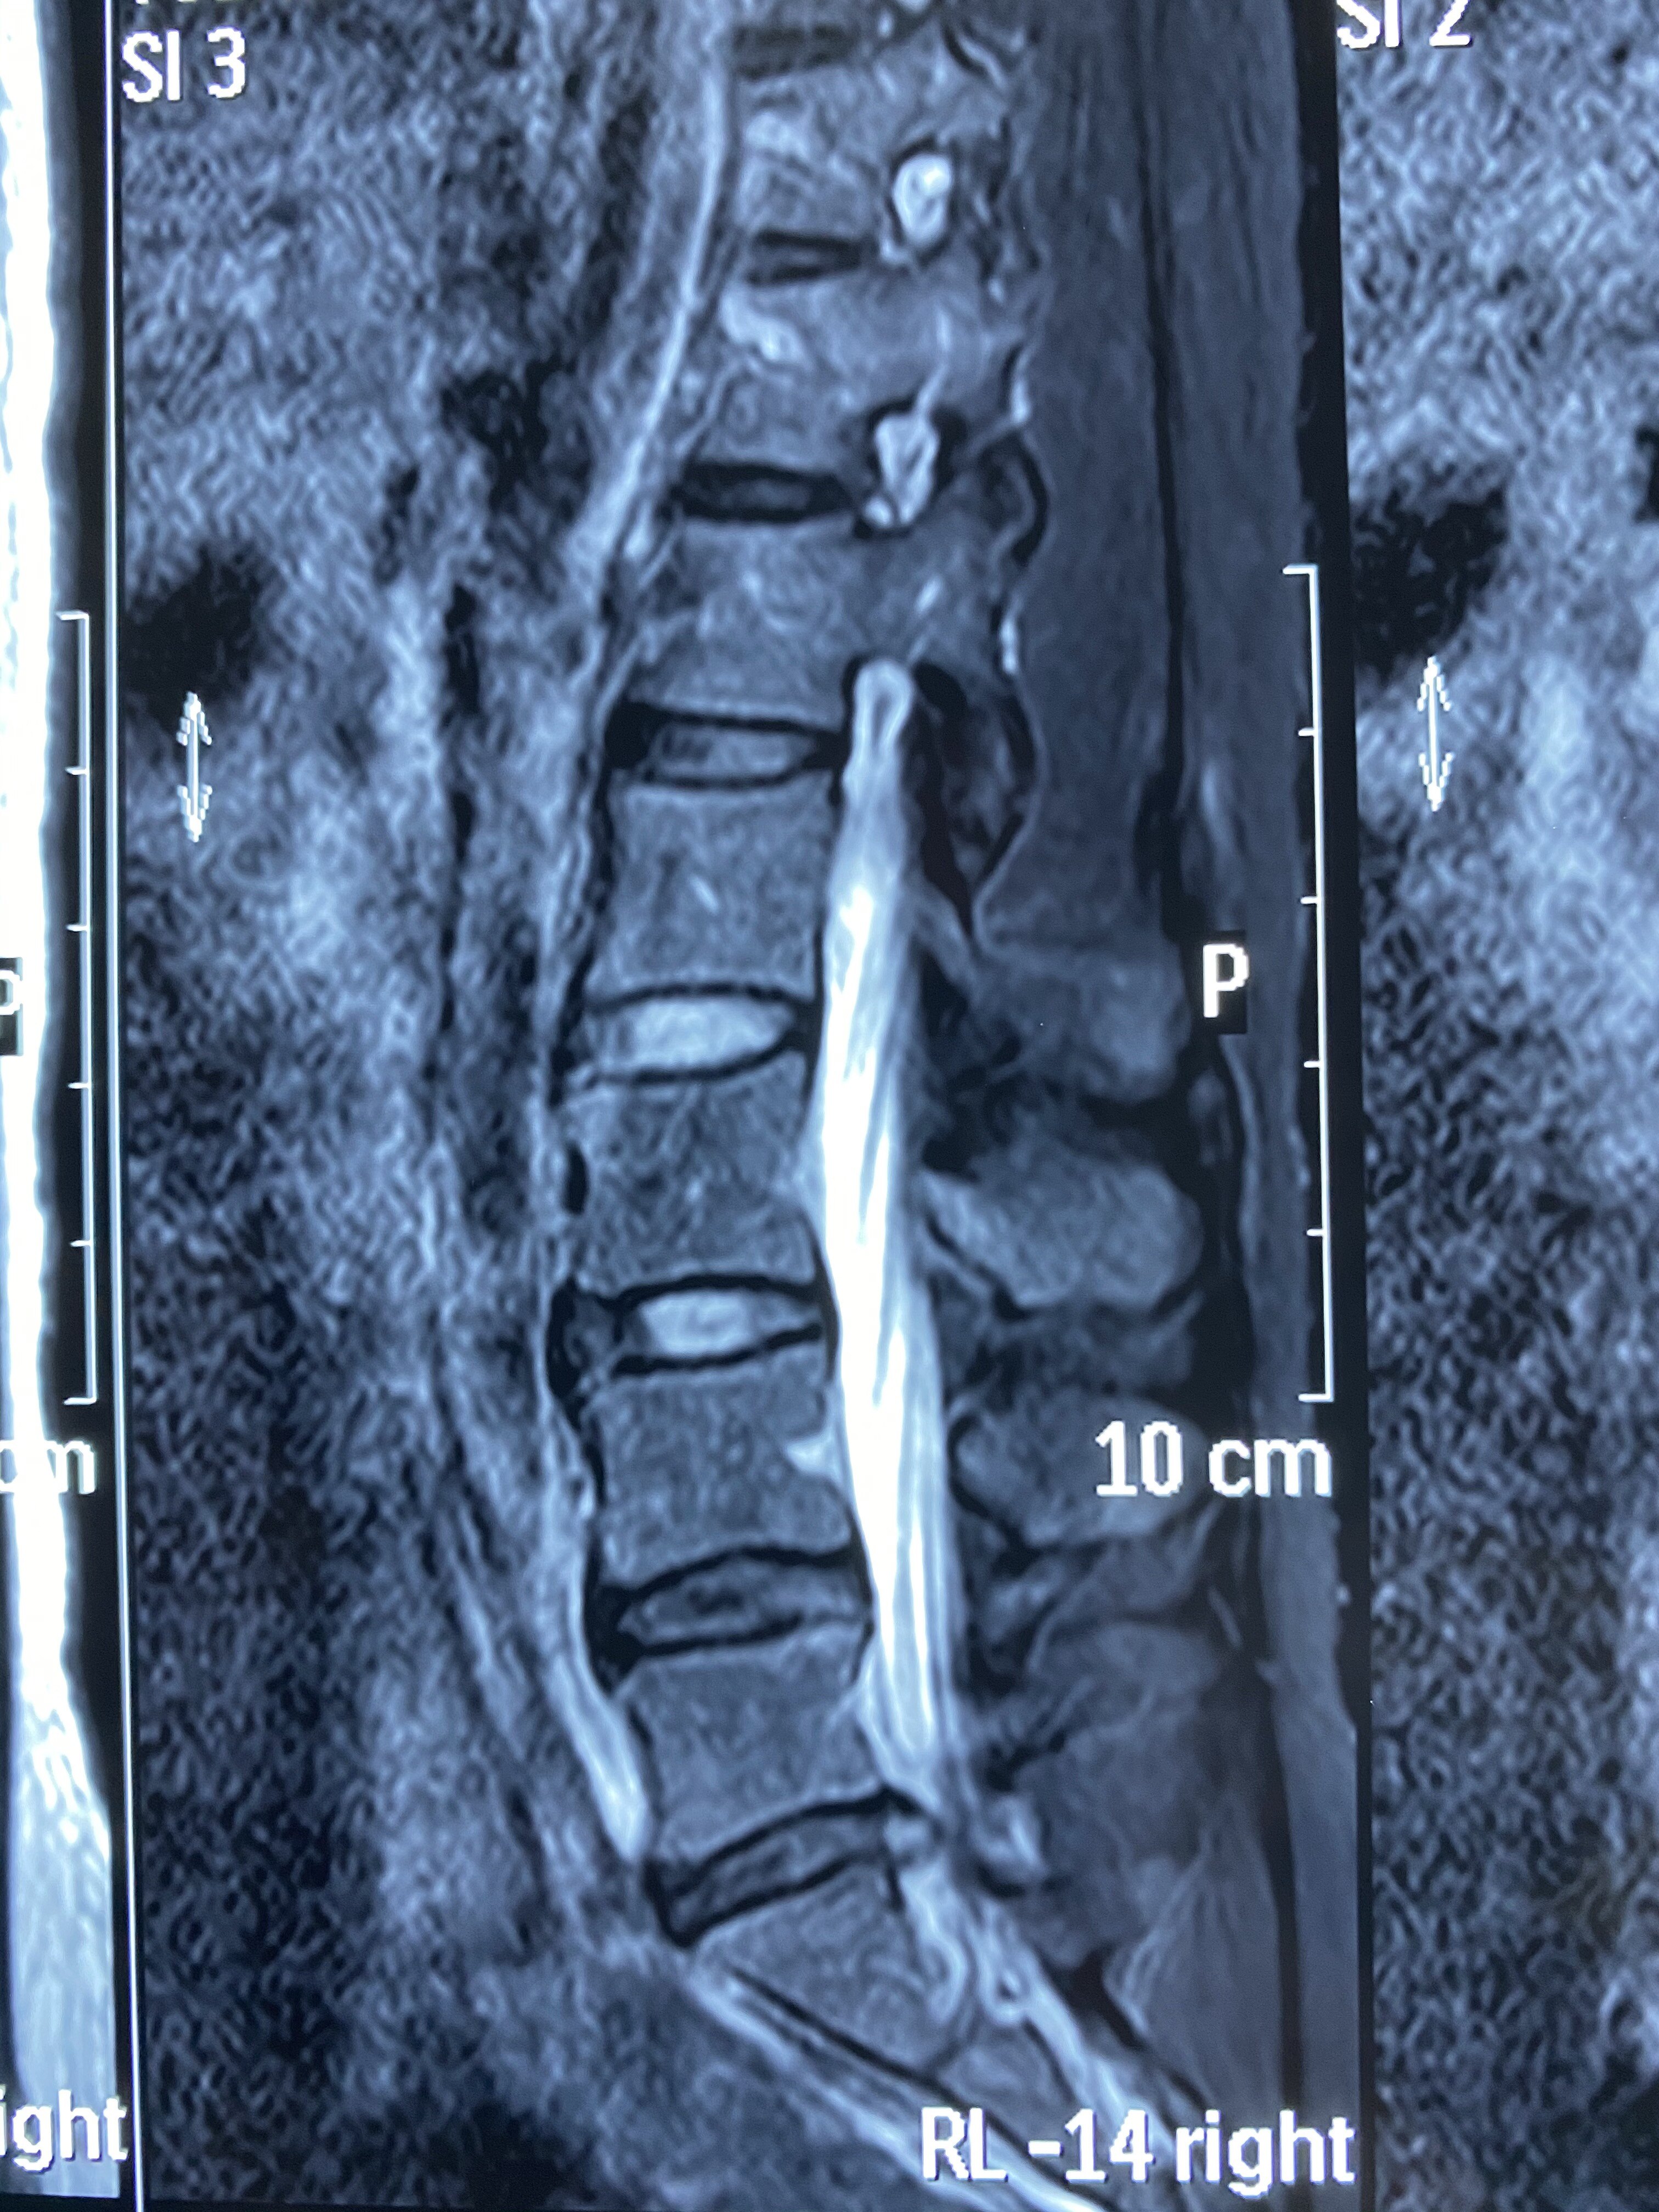 mri显示腰5-骶1椎间盘突出压迫硬膜囊严重